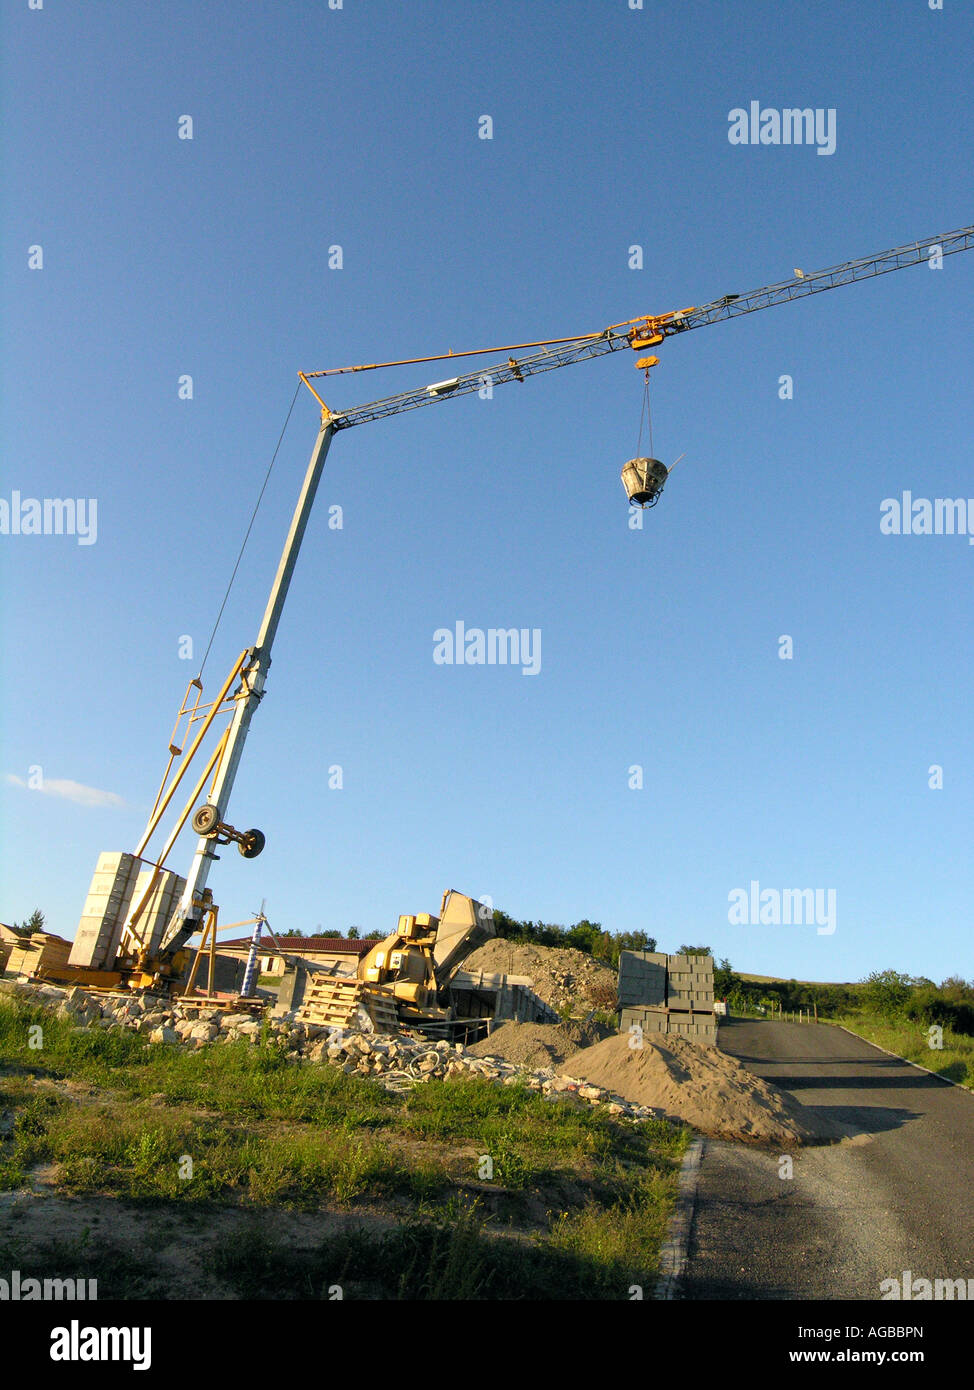 Scatto ad angolo basso di una gru da cantiere catturata su un cielo blu Foto Stock